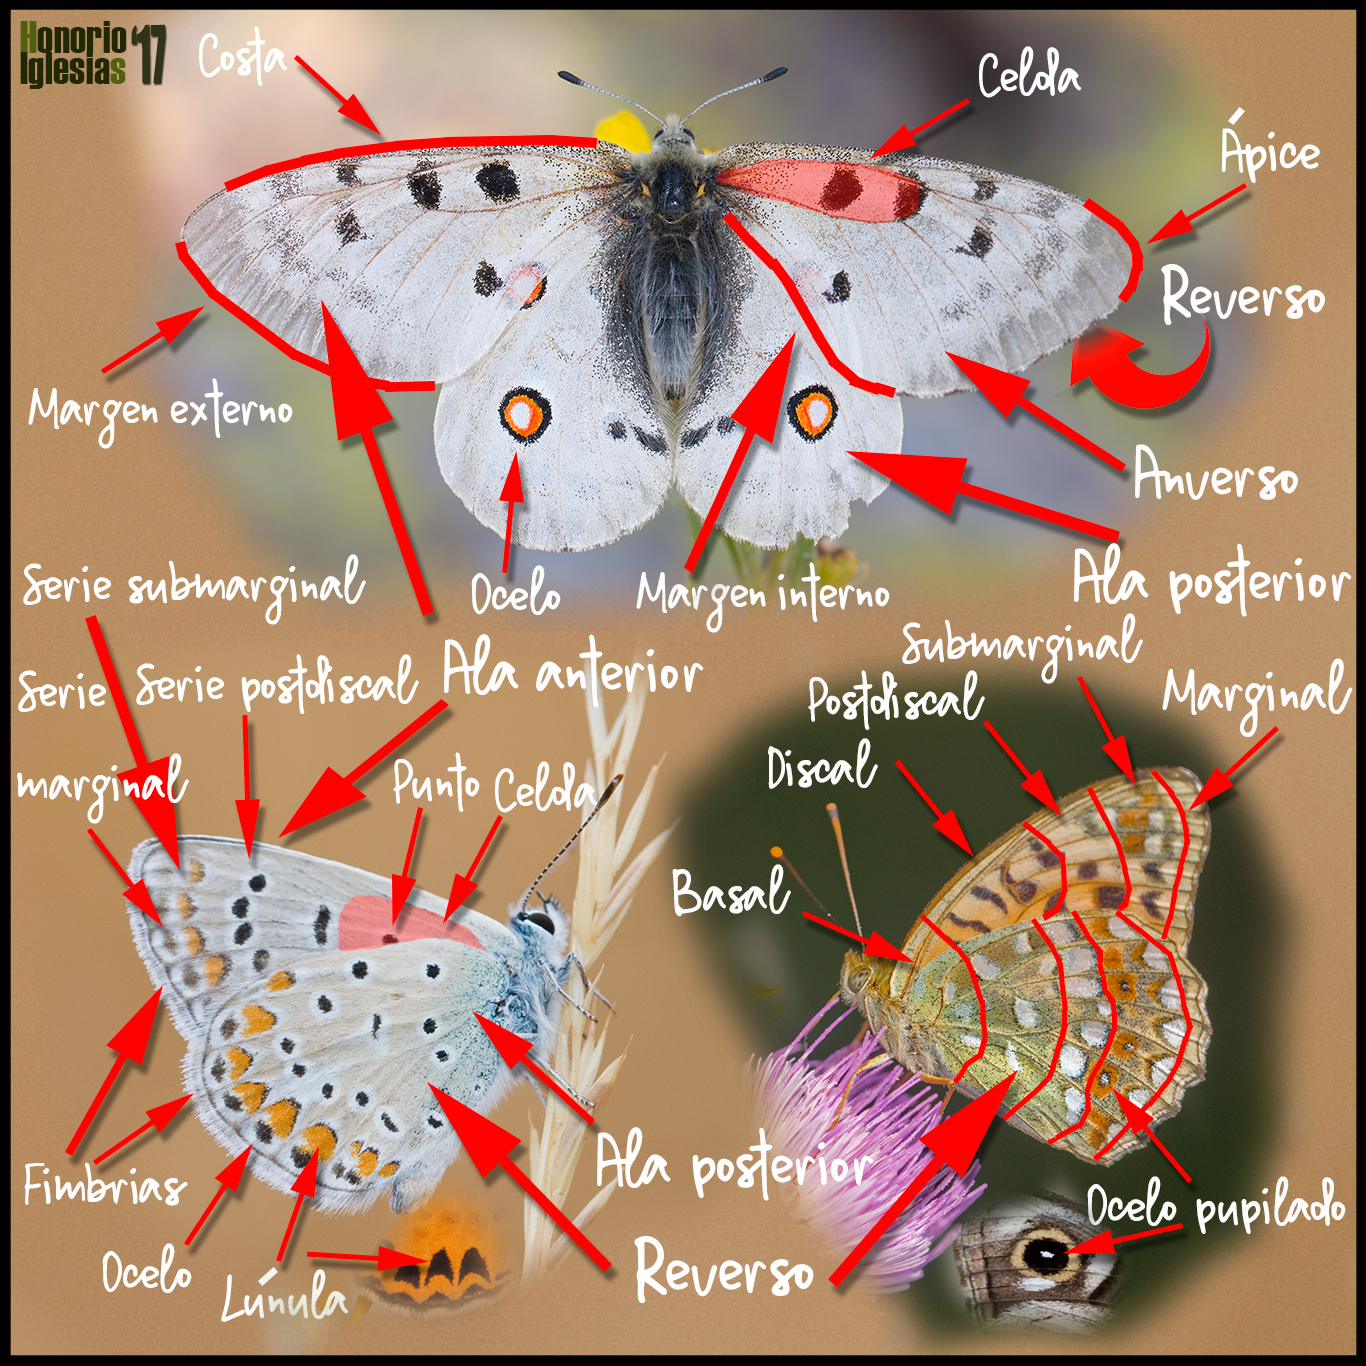 Costa código Morse Embajador Las mariposas diurnas de Valsaín y de La Sierra de Guadarrama